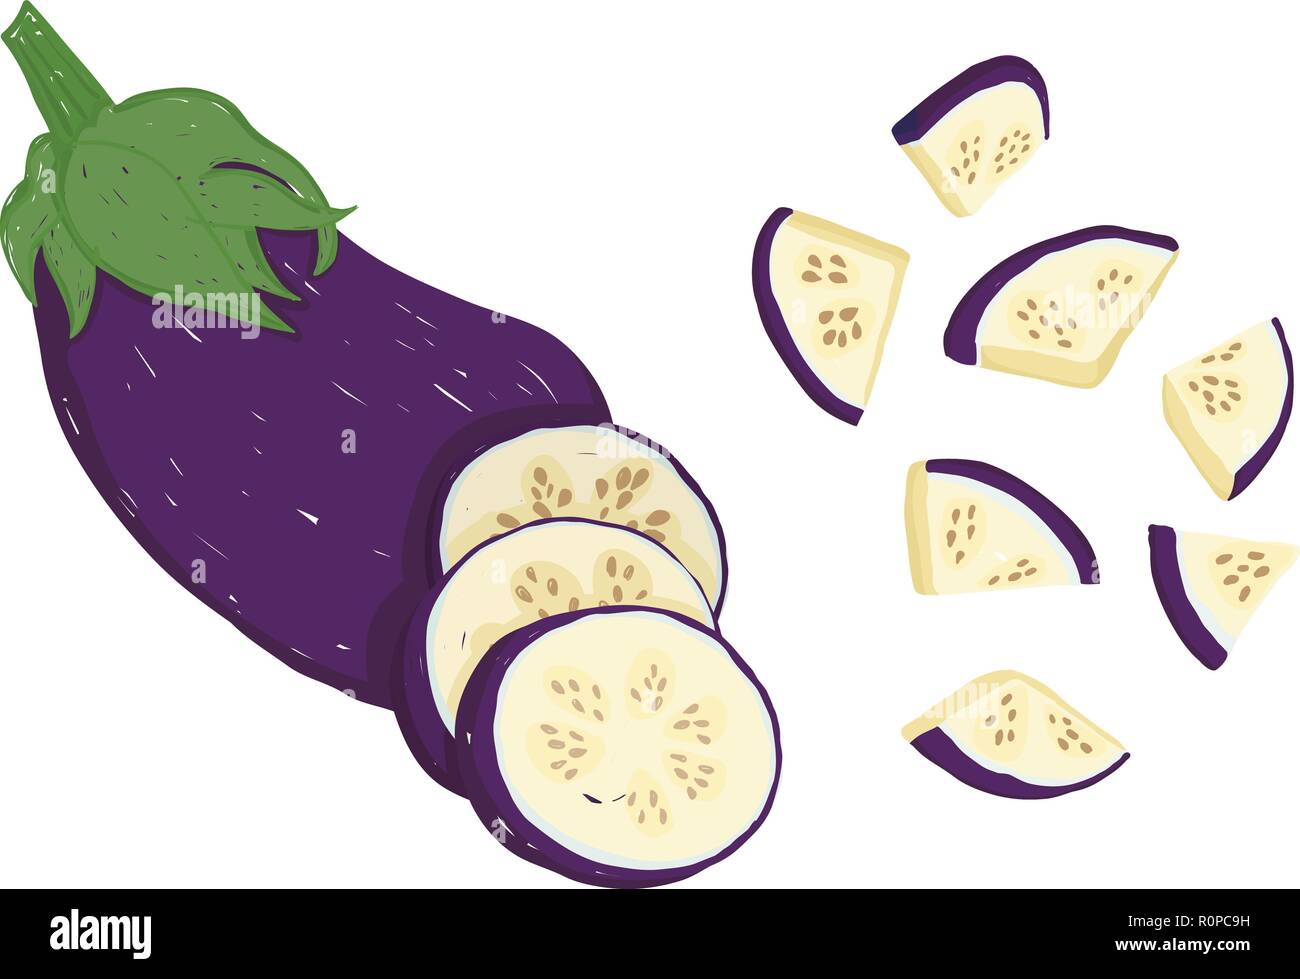 Vector set picturale avec son ensemble aubergine, tranchée et haché, modifiable, évolutive, illustration isolé sur un fond blanc. L'utiliser pour des recettes, des res Illustration de Vecteur